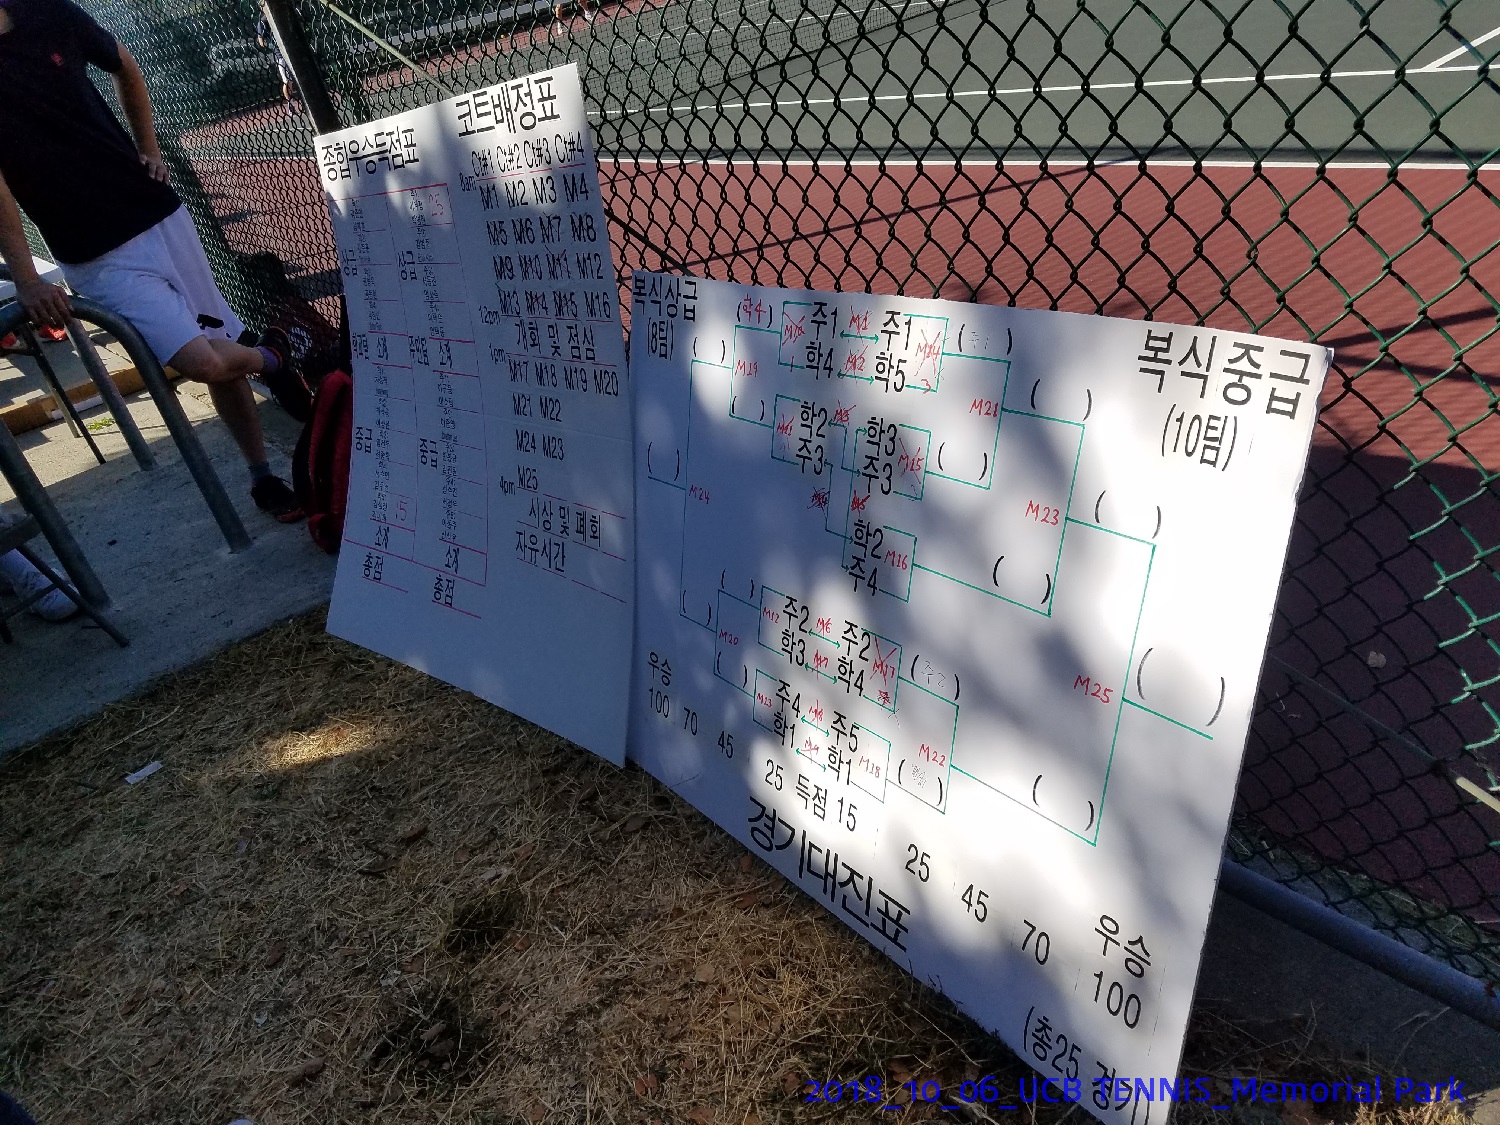 resized_2018_10_06_UCB Tennis at Memorial Park_102312.jpg